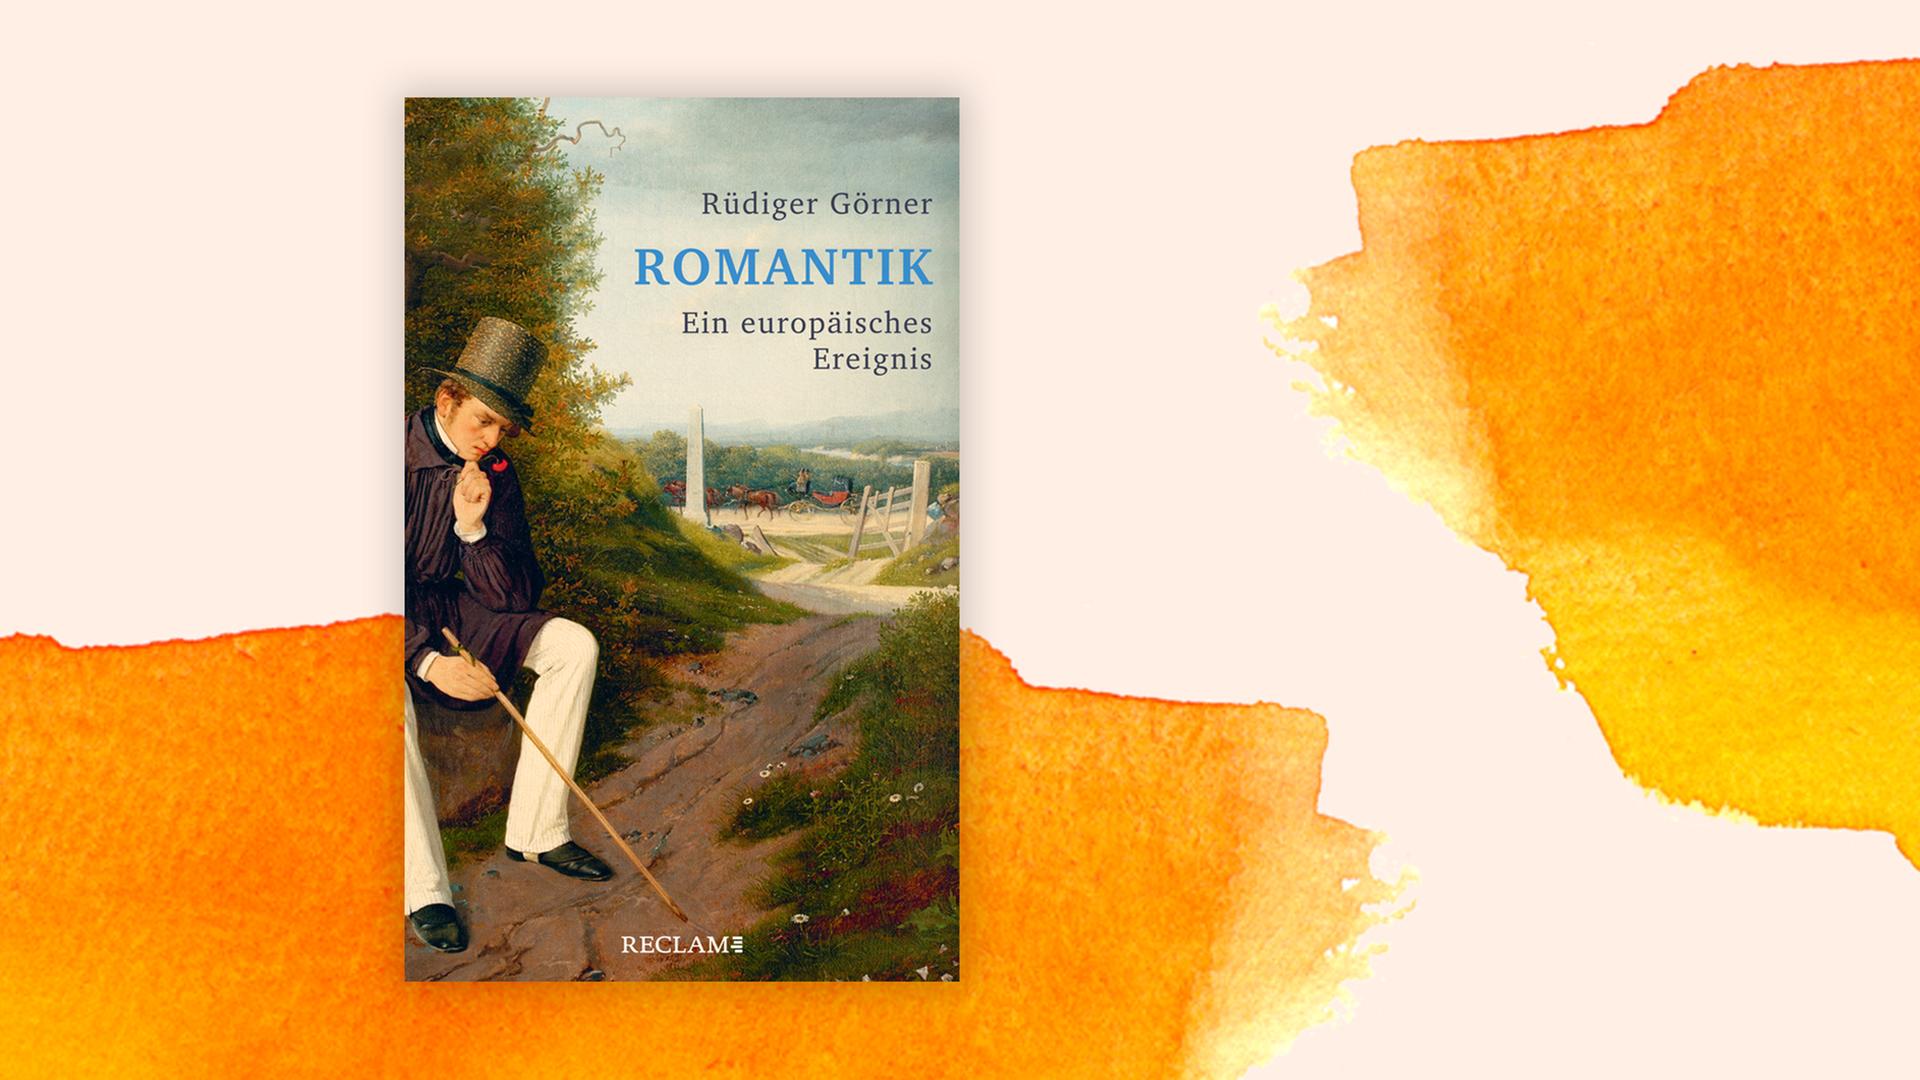 Buchcover "Romantik – ein europäisches Ereignis" von Rüdiger Görner.